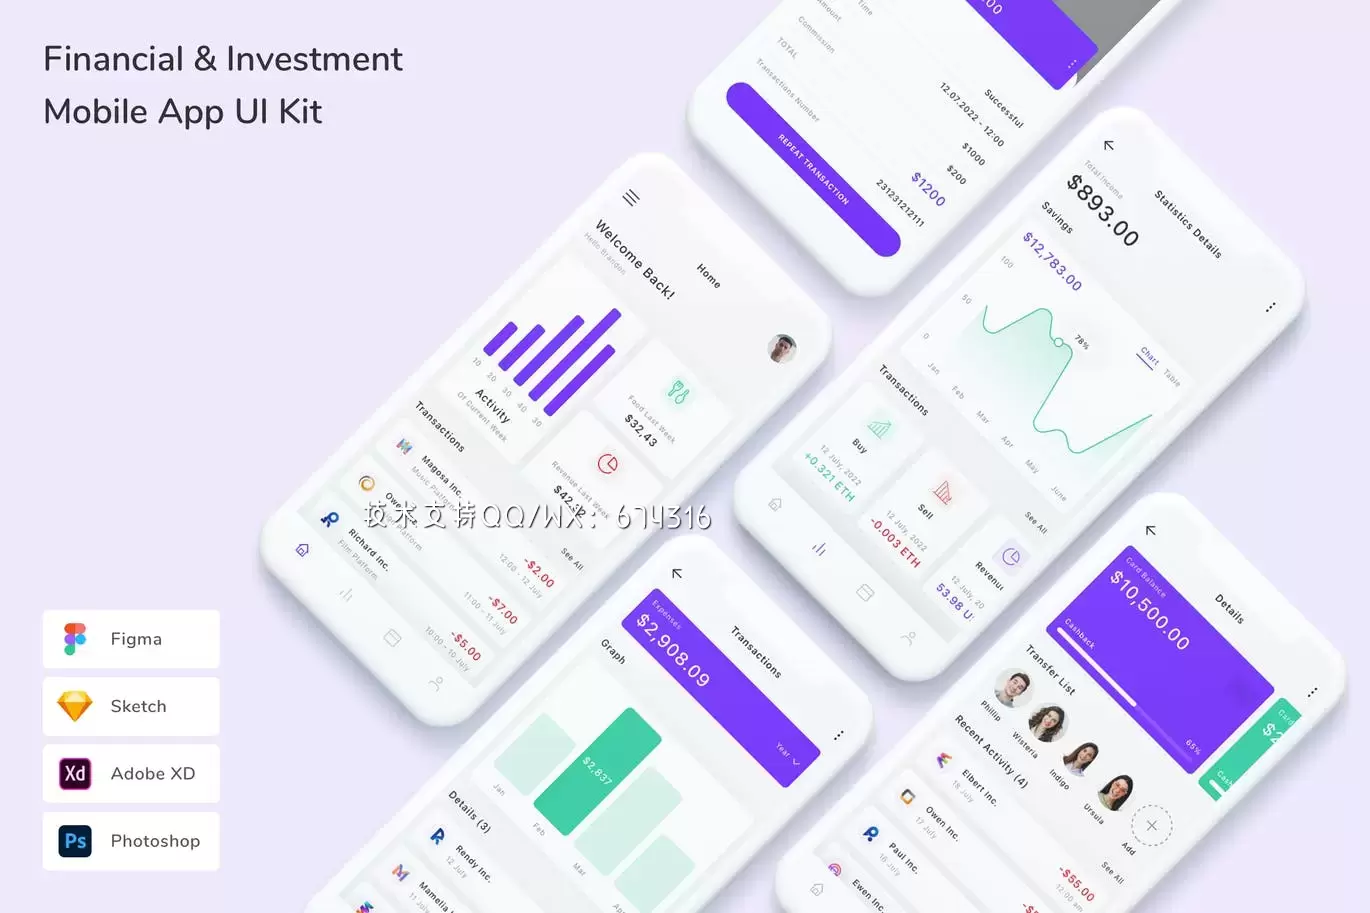 缩略图金融与投资 App UI Kit (FIG,PSD,SKETCH,XD)下载